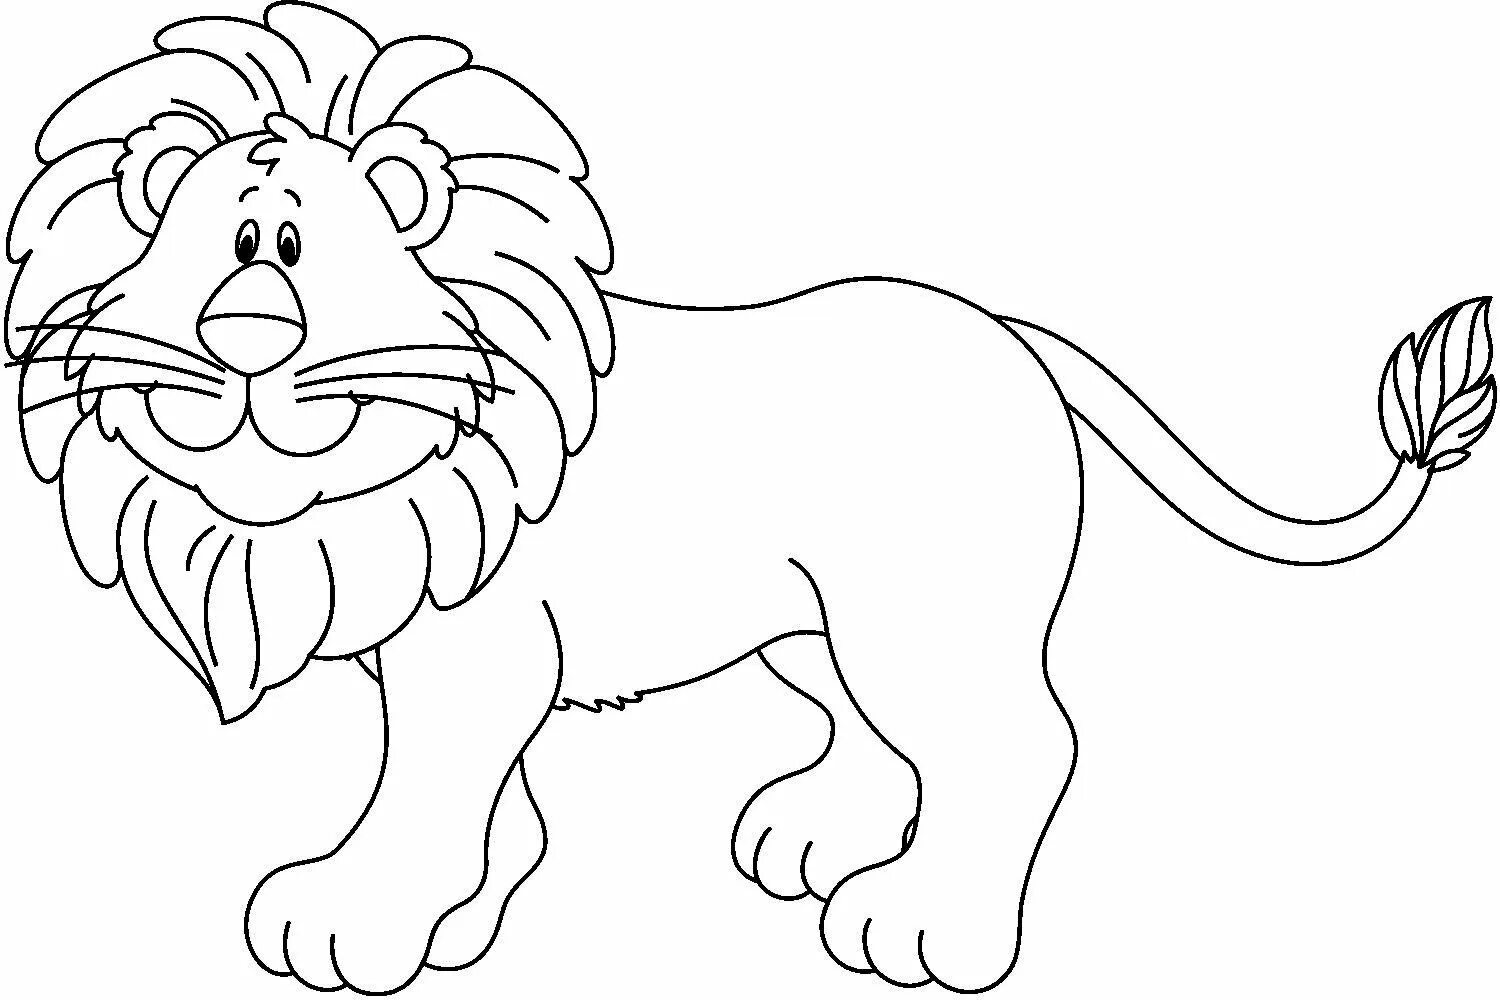 Привлекательная раскраска льва для детей